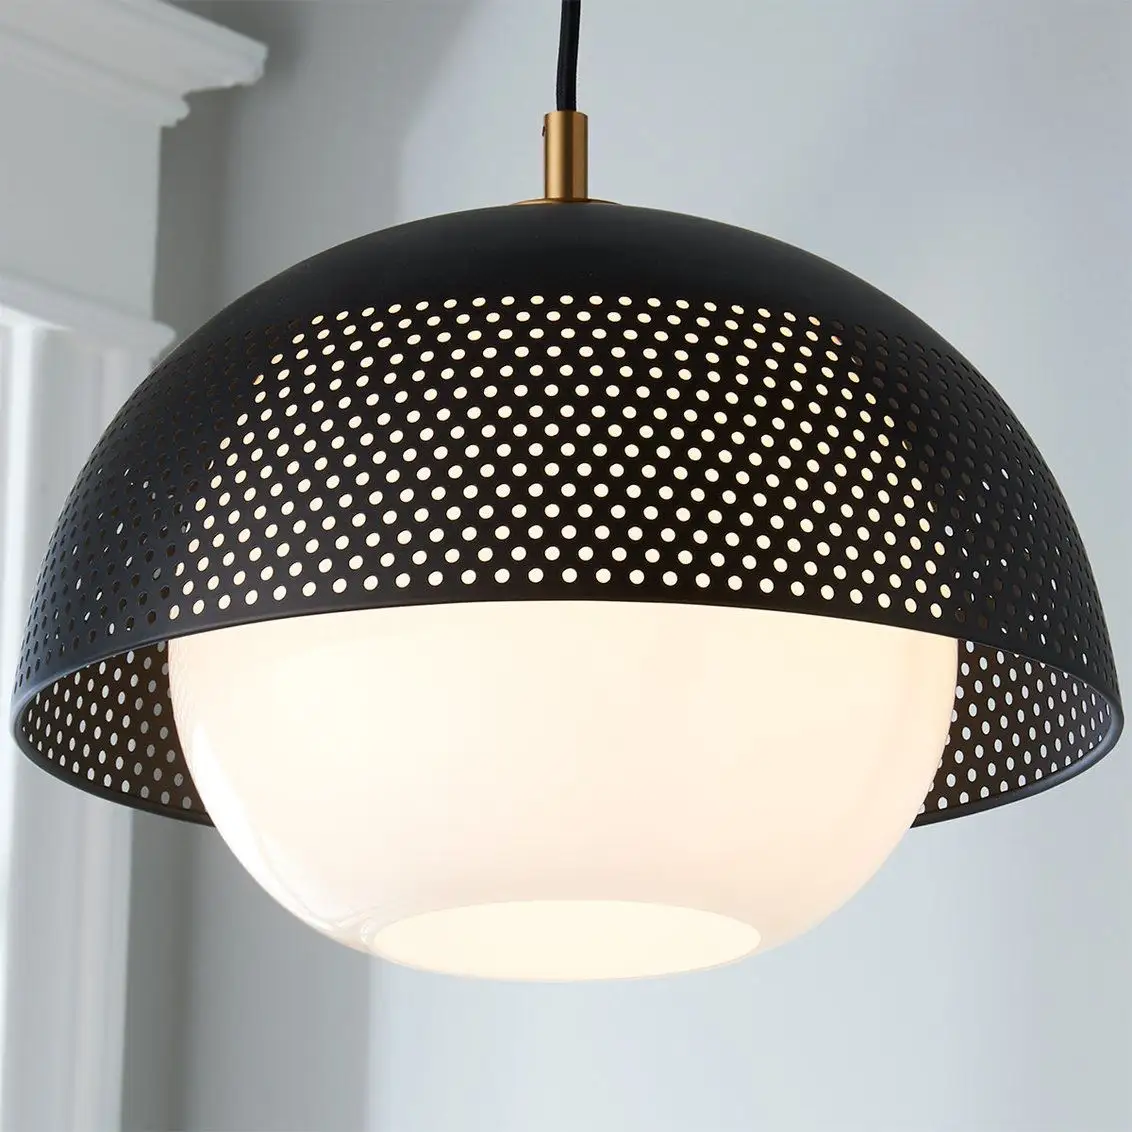 Tốt nhất bán cao cấp kim loại mặt dây đèn trần đèn cho trang trí nội thất giá thấp bởi nhà cung cấp